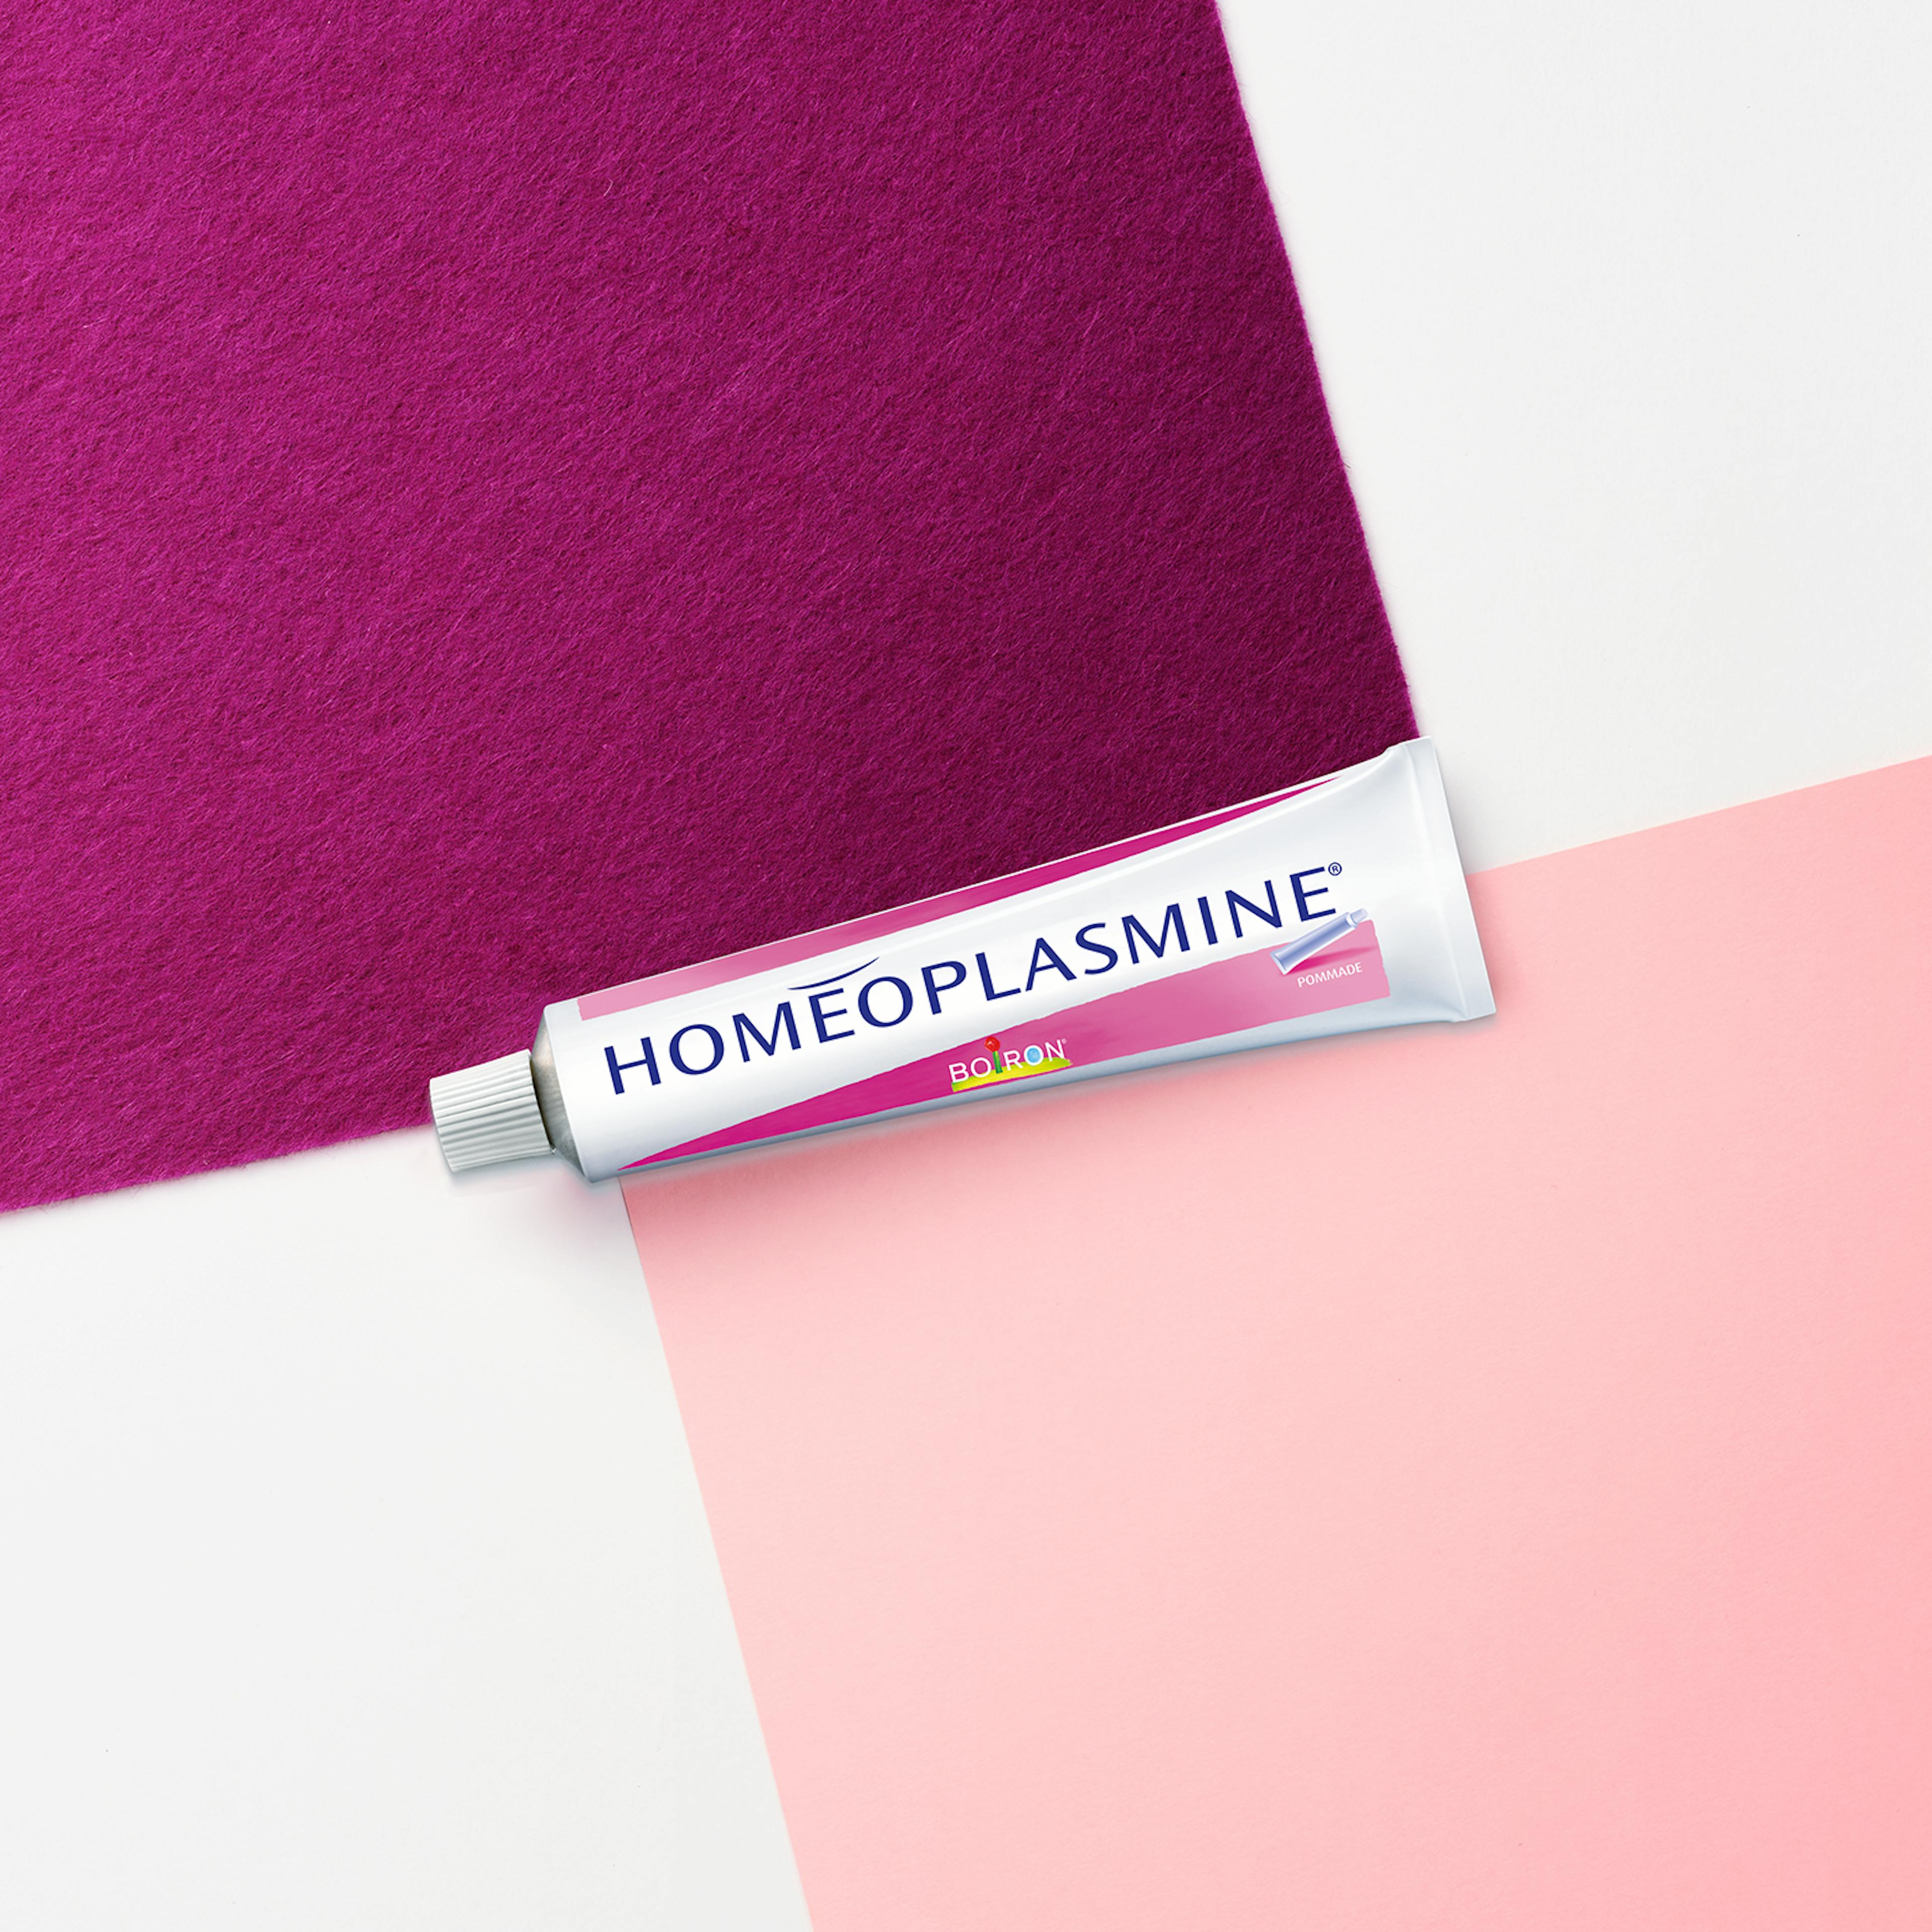 homeoplasmine zalf - onze homeopathische geneesmiddelen specialiteiten - huidirritatie - irritatie van het neusslijmvlies